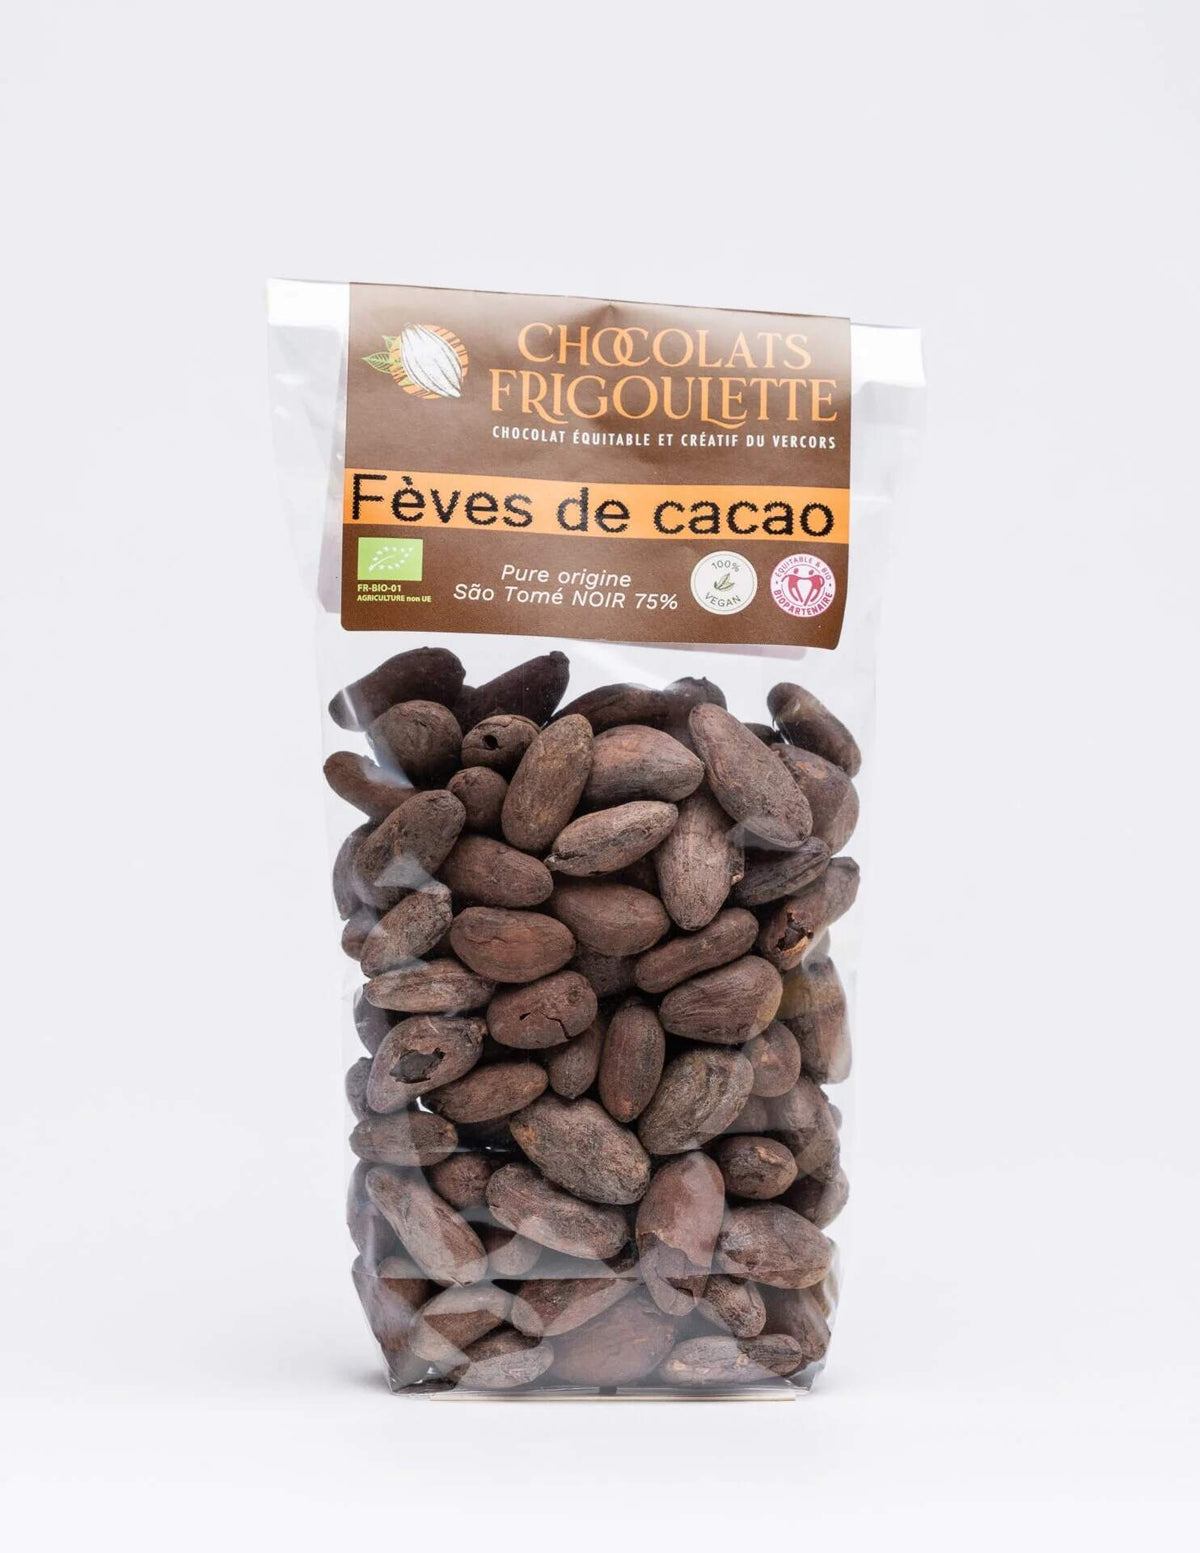 Fèves de cacao SAO TOME torréfiée La Frigoulette.